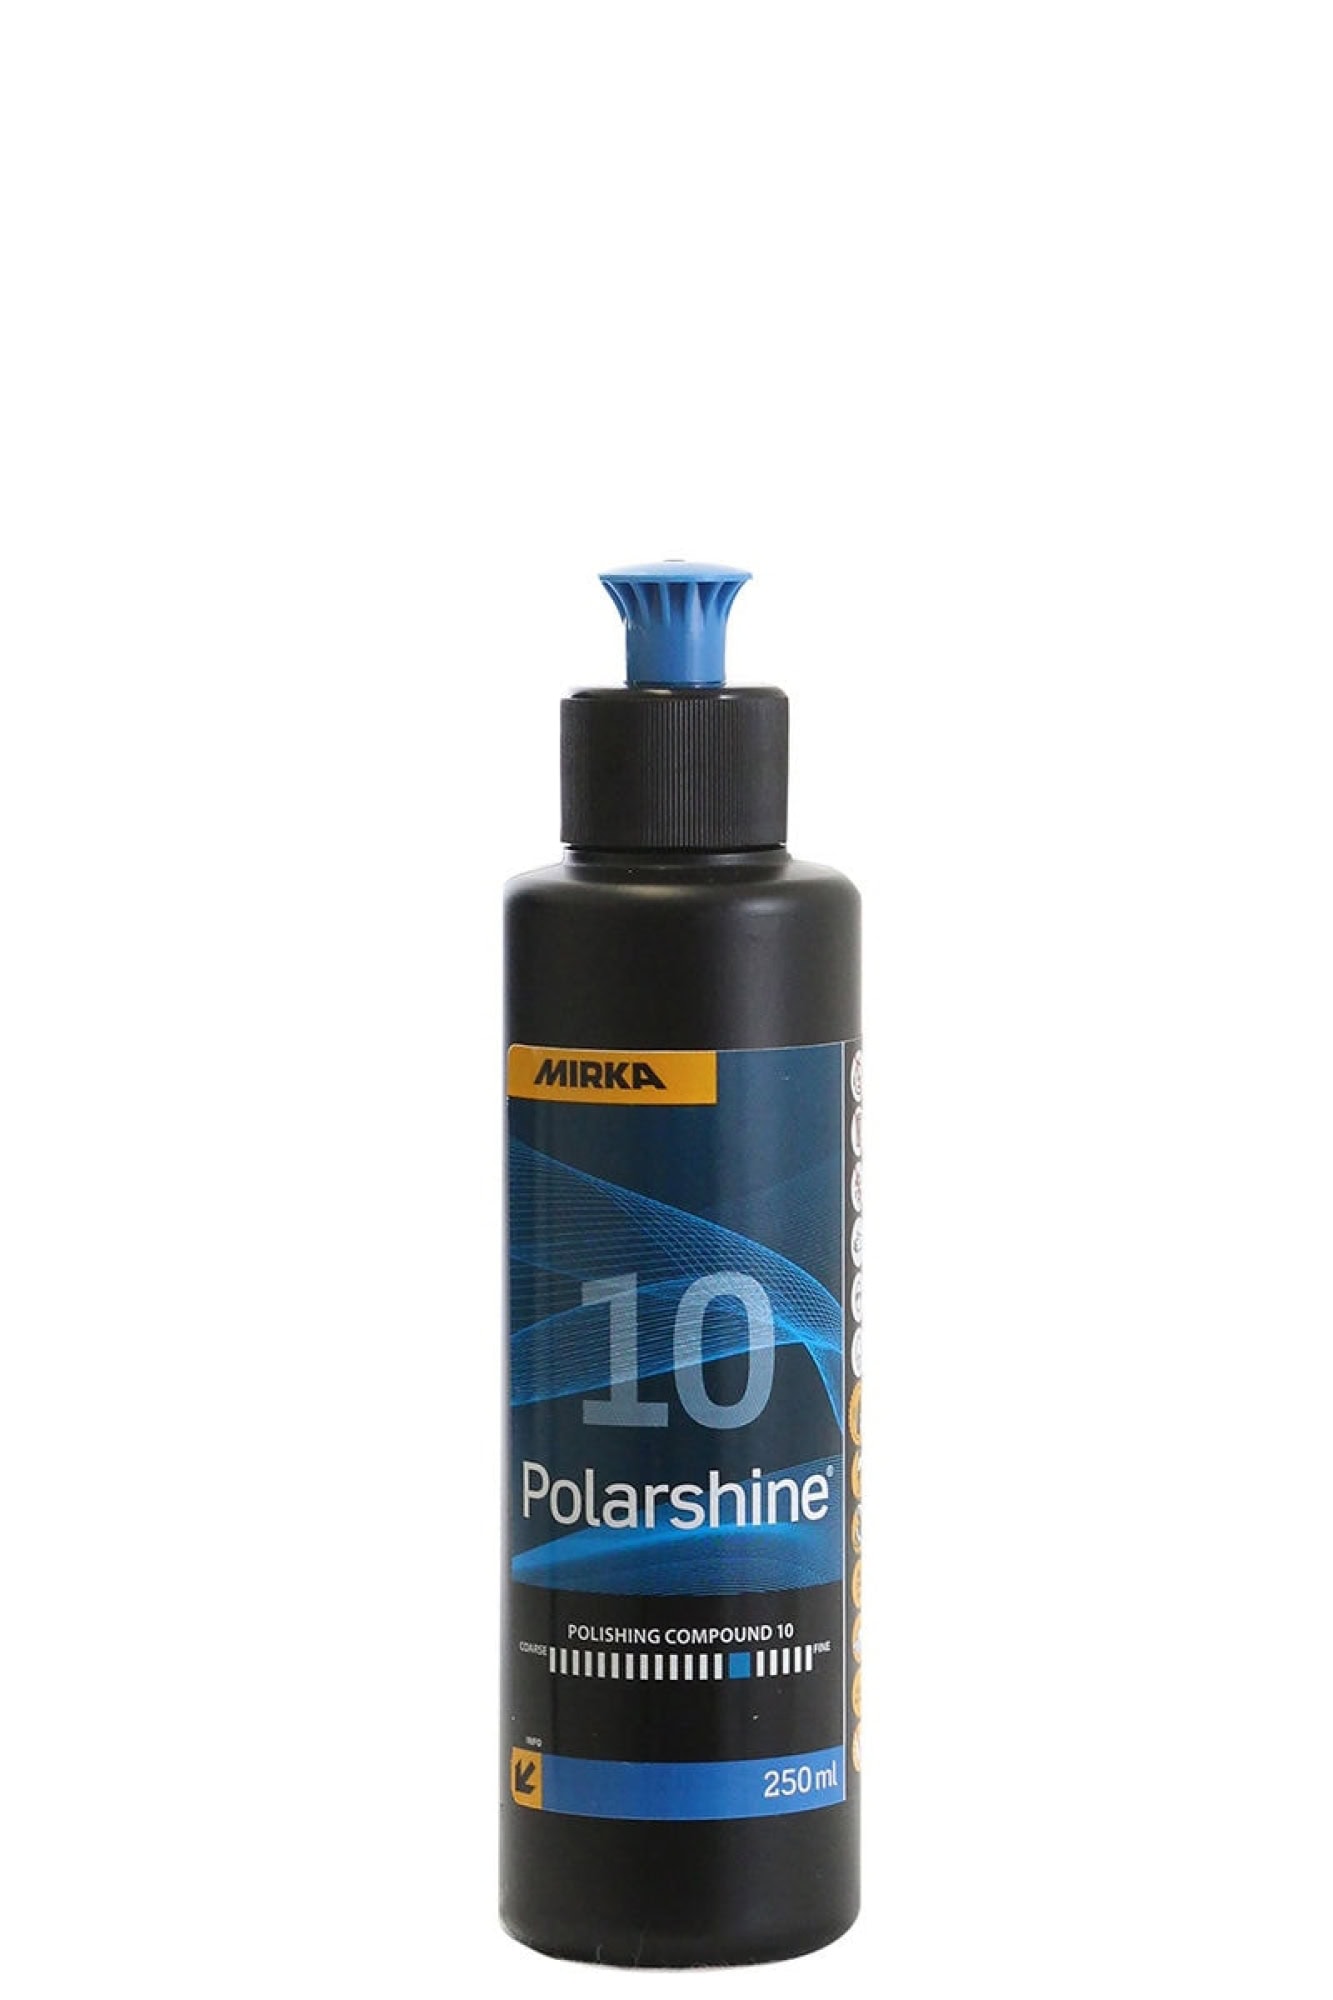 Mirka® Polarshine 10 7995002511, 250 ml, One-Step Politur für ein schnelles und perfektes Finish